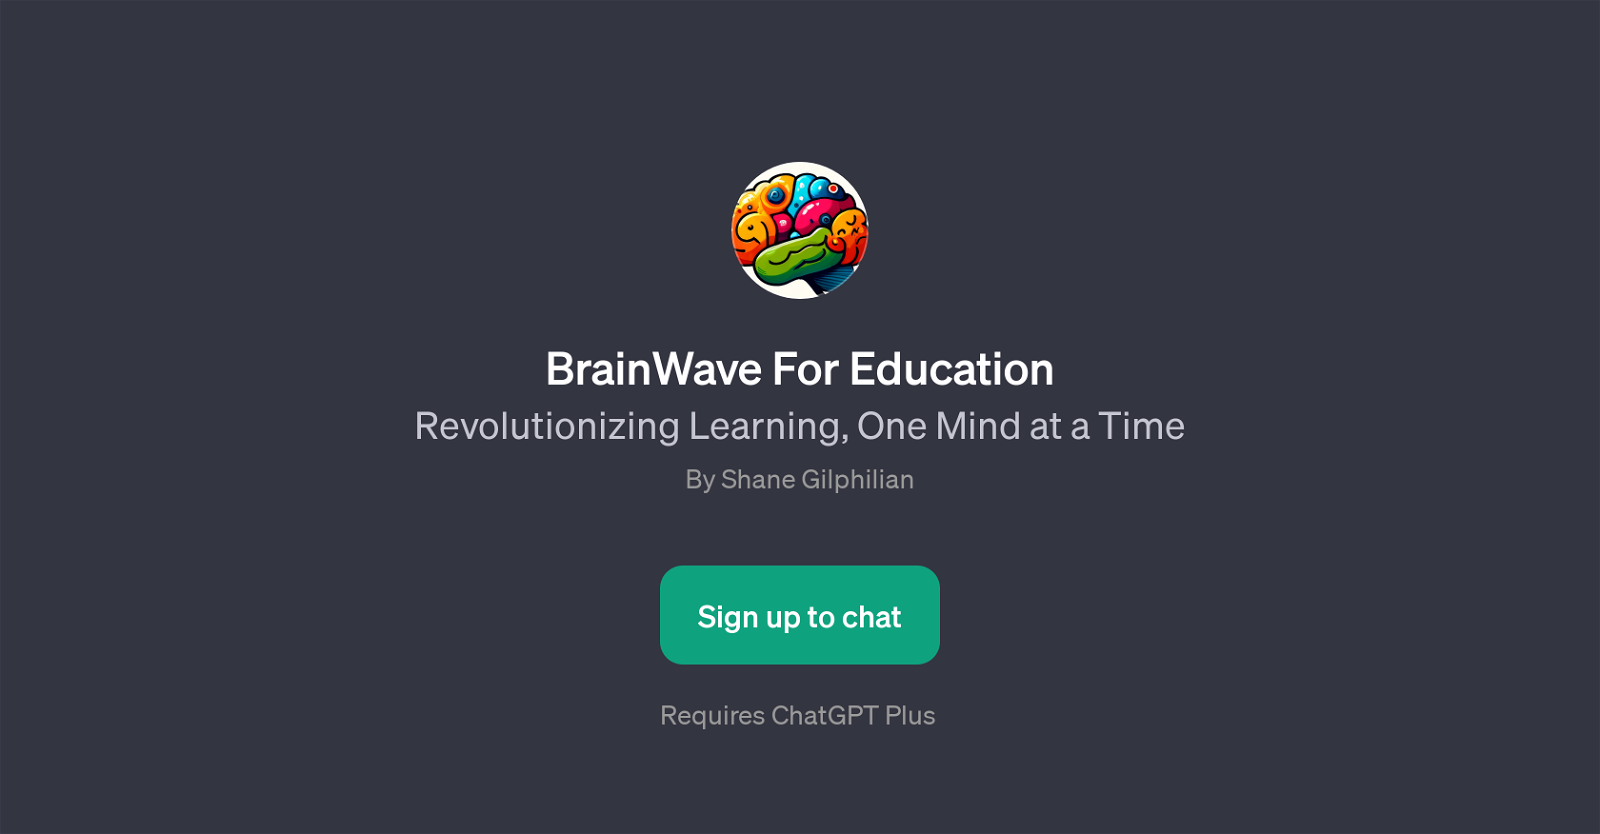 BrainWave For Education website